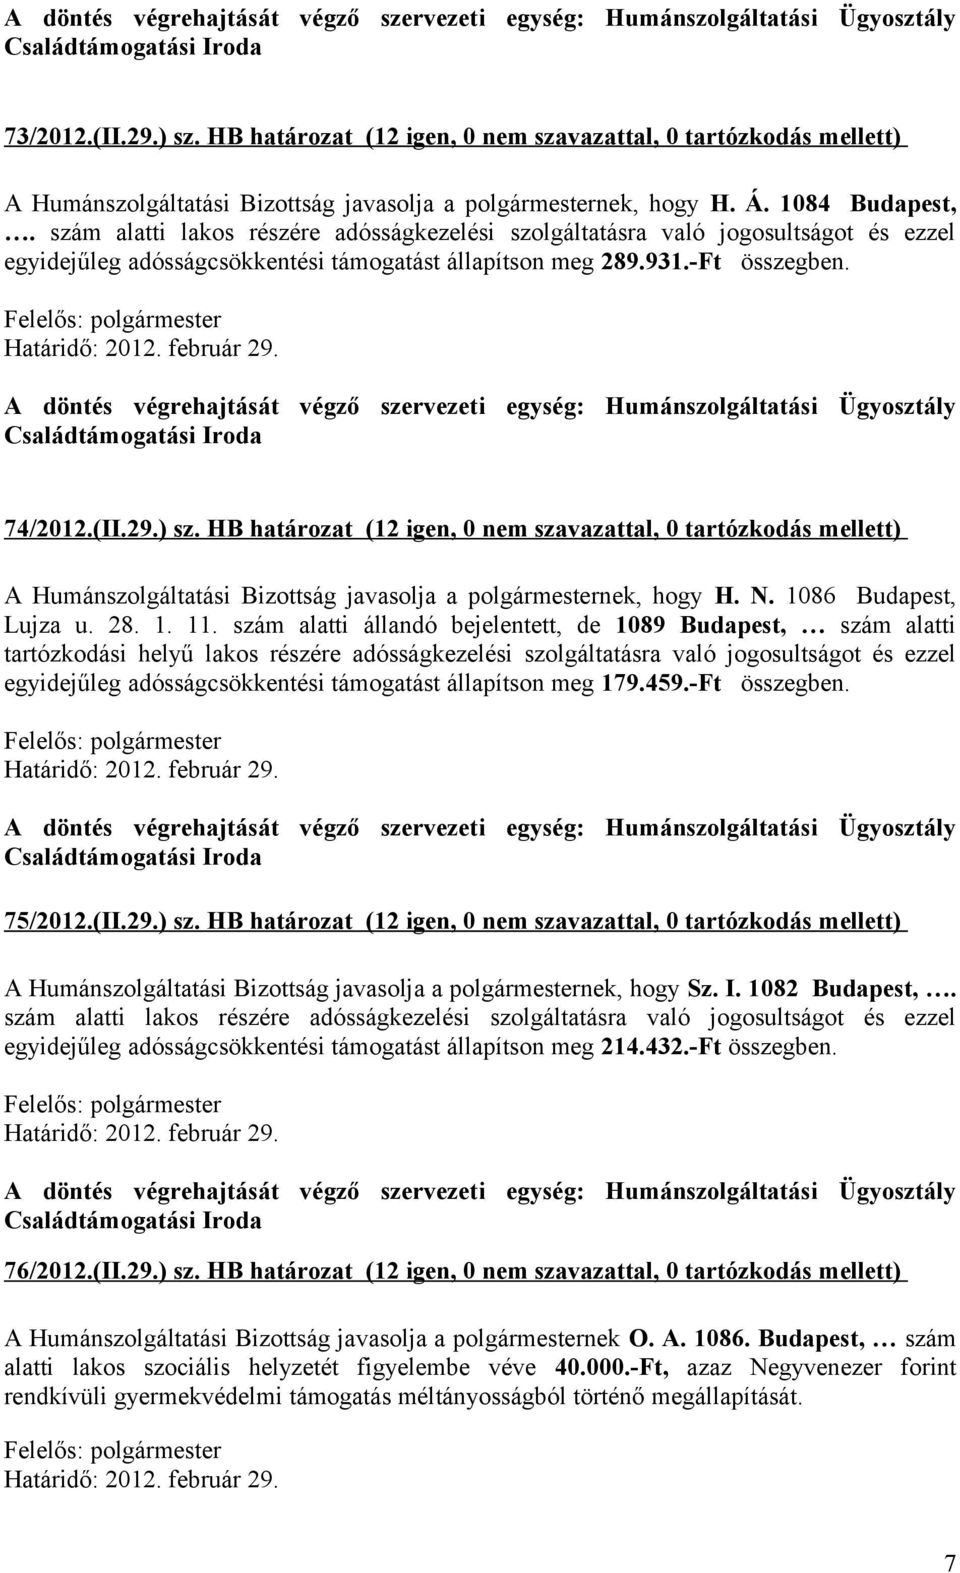 HB határozat (12 igen, 0 nem szavazattal, 0 tartózkodás mellett) A Humánszolgáltatási Bizottság javasolja a polgármesternek, hogy H. N. 1086 Budapest, Lujza u. 28. 1. 11.